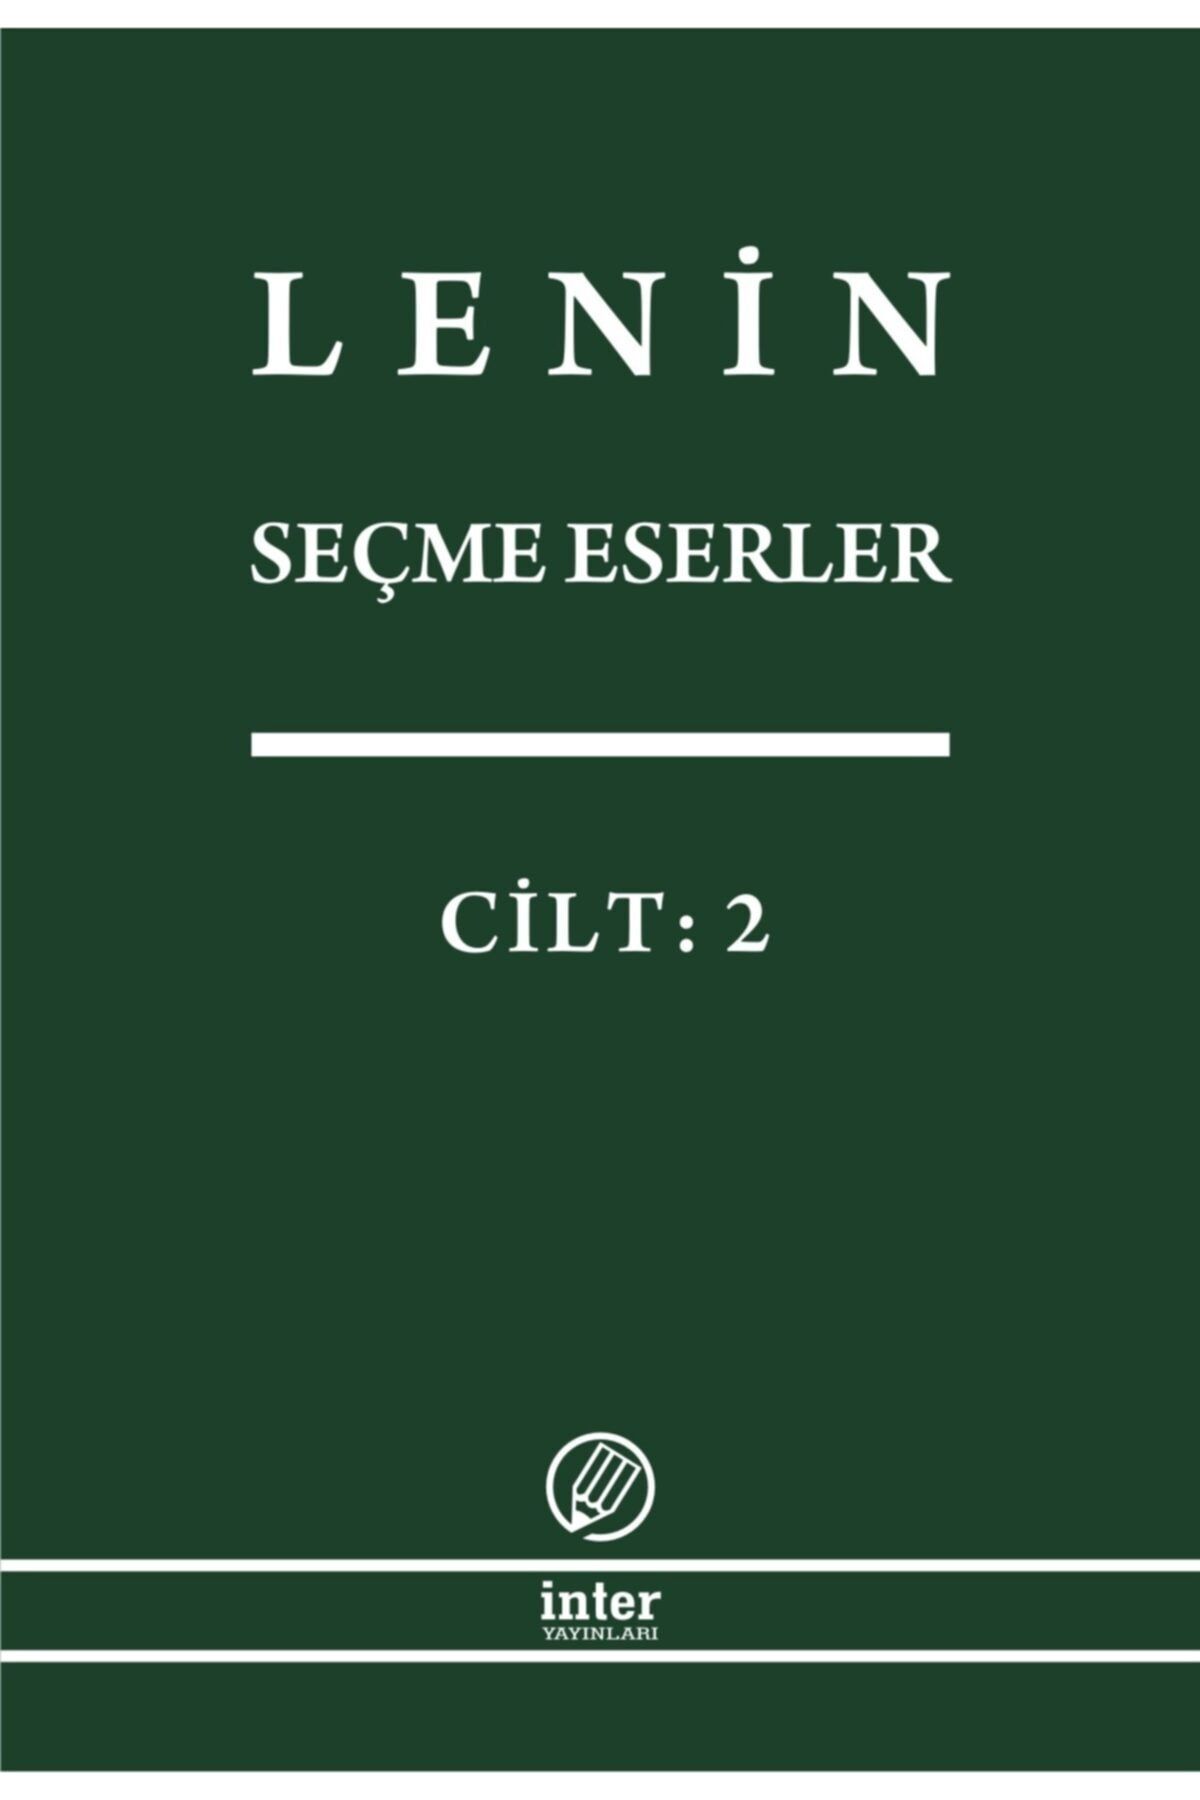 İnter Yayınları Lenin Seçme Eserler Cilt 2